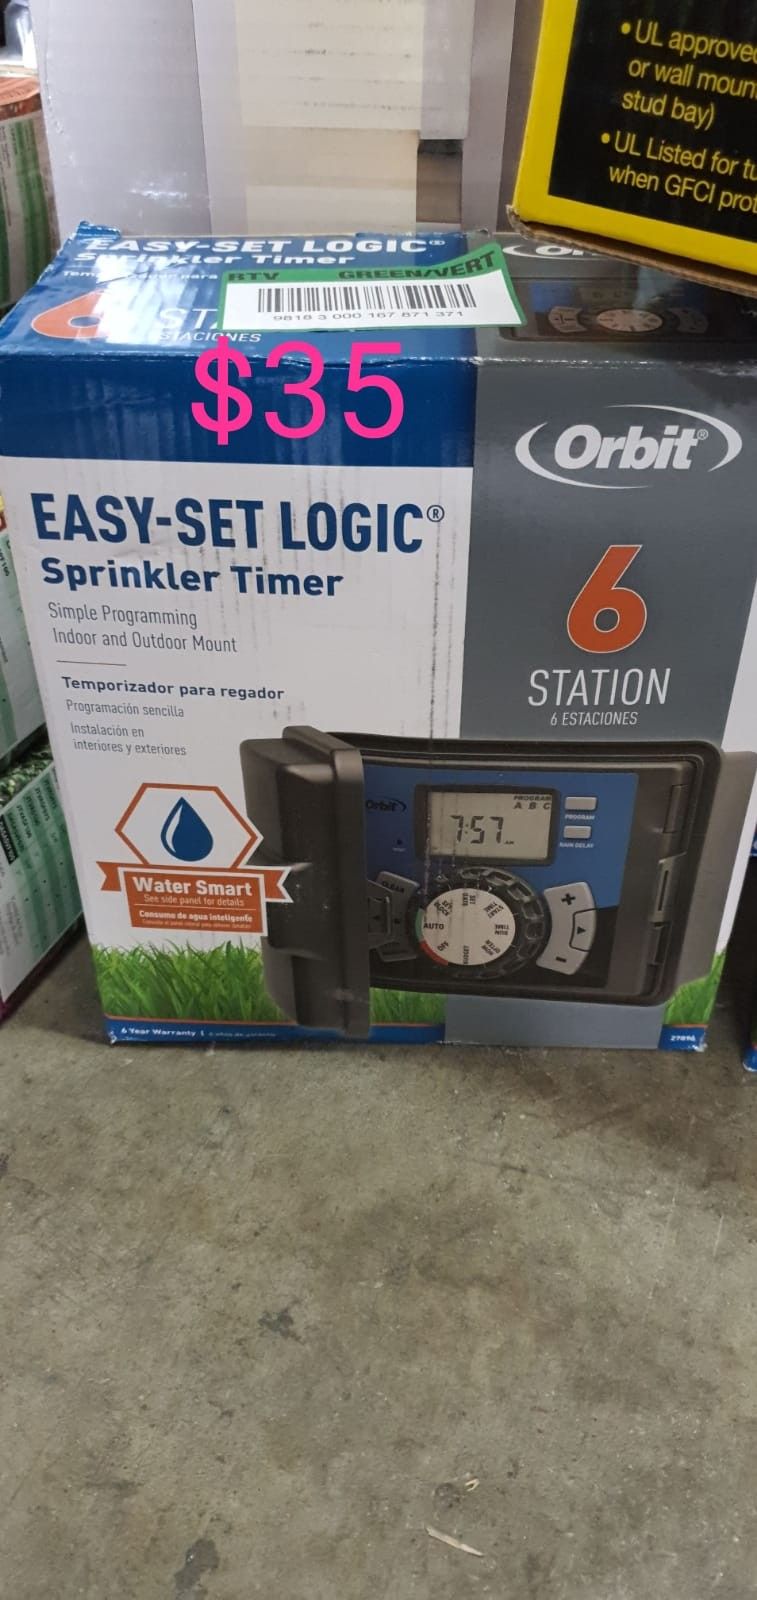 6 station orbit sprinkler timer outdoor